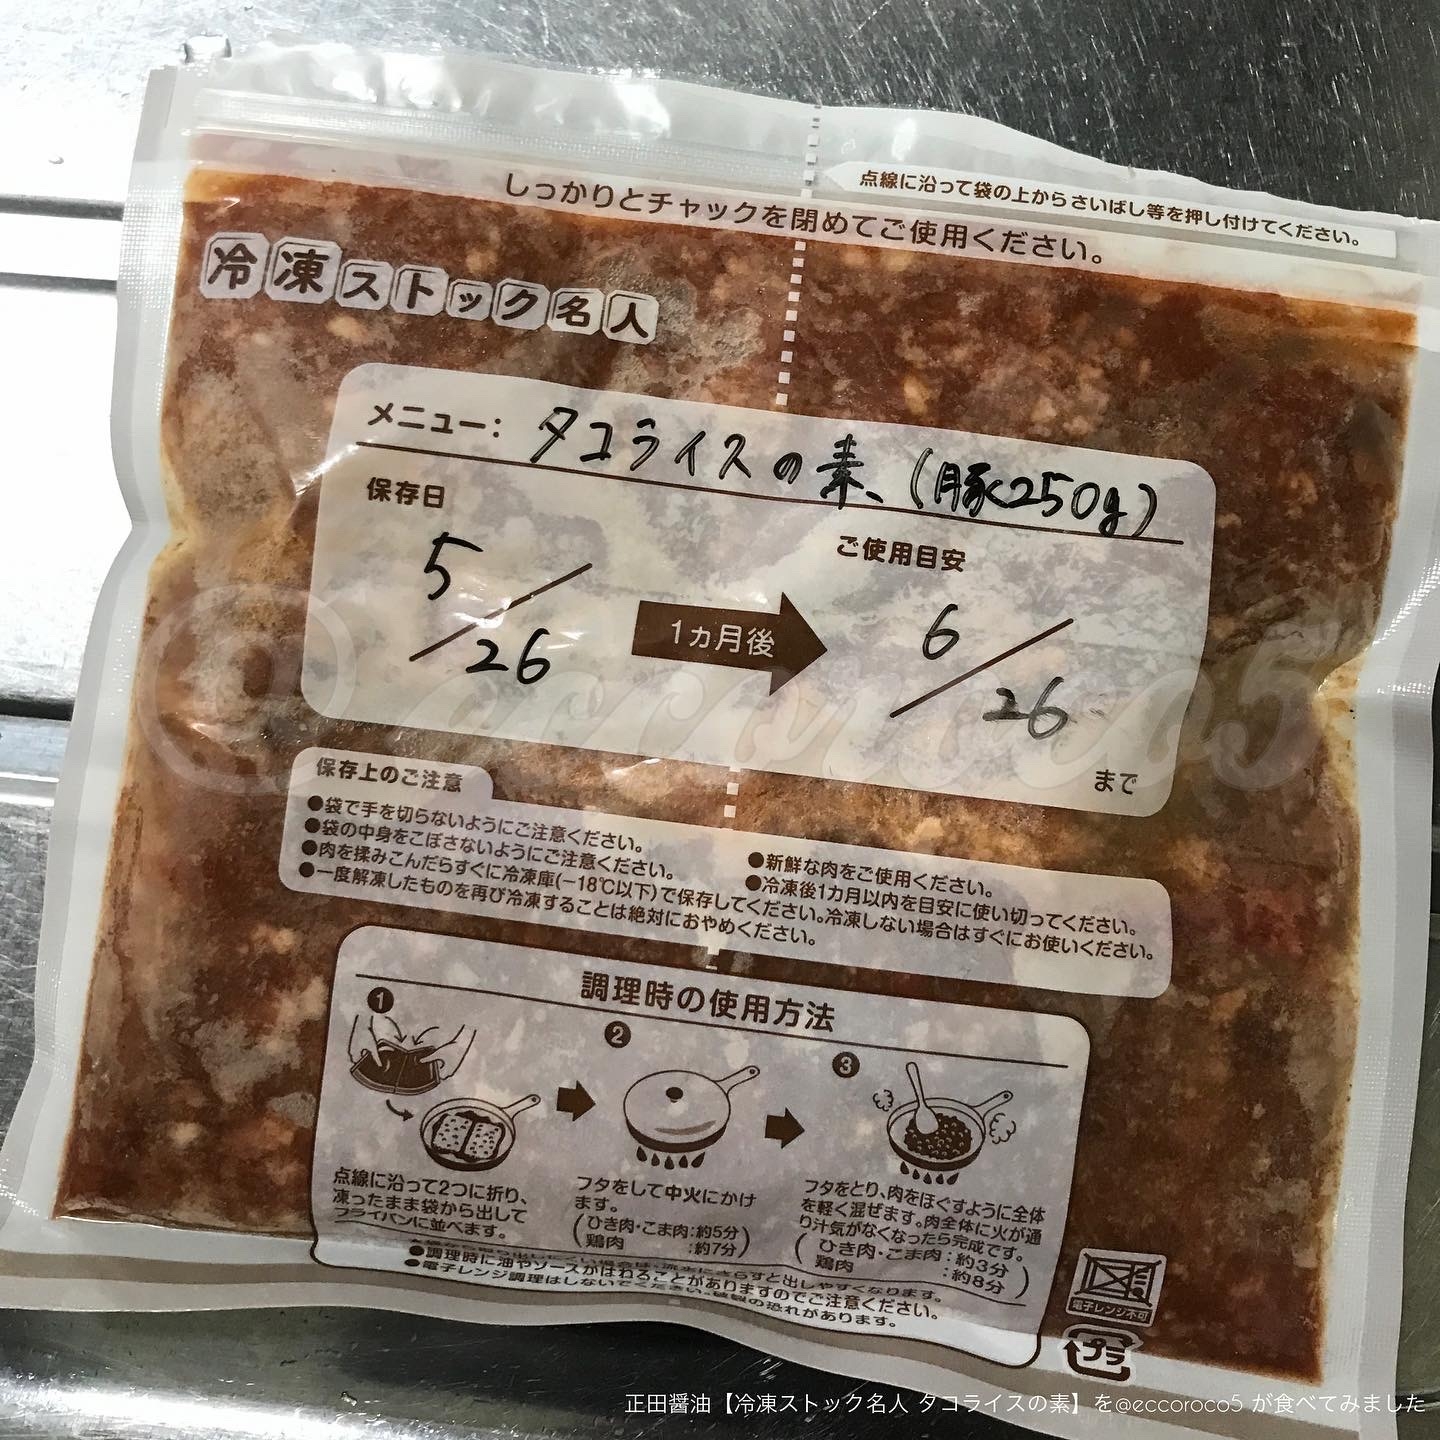 正田醤油 冷凍ストック名人 タコライスの素の良い点・メリットに関する@eccoroco5さんの口コミ画像2